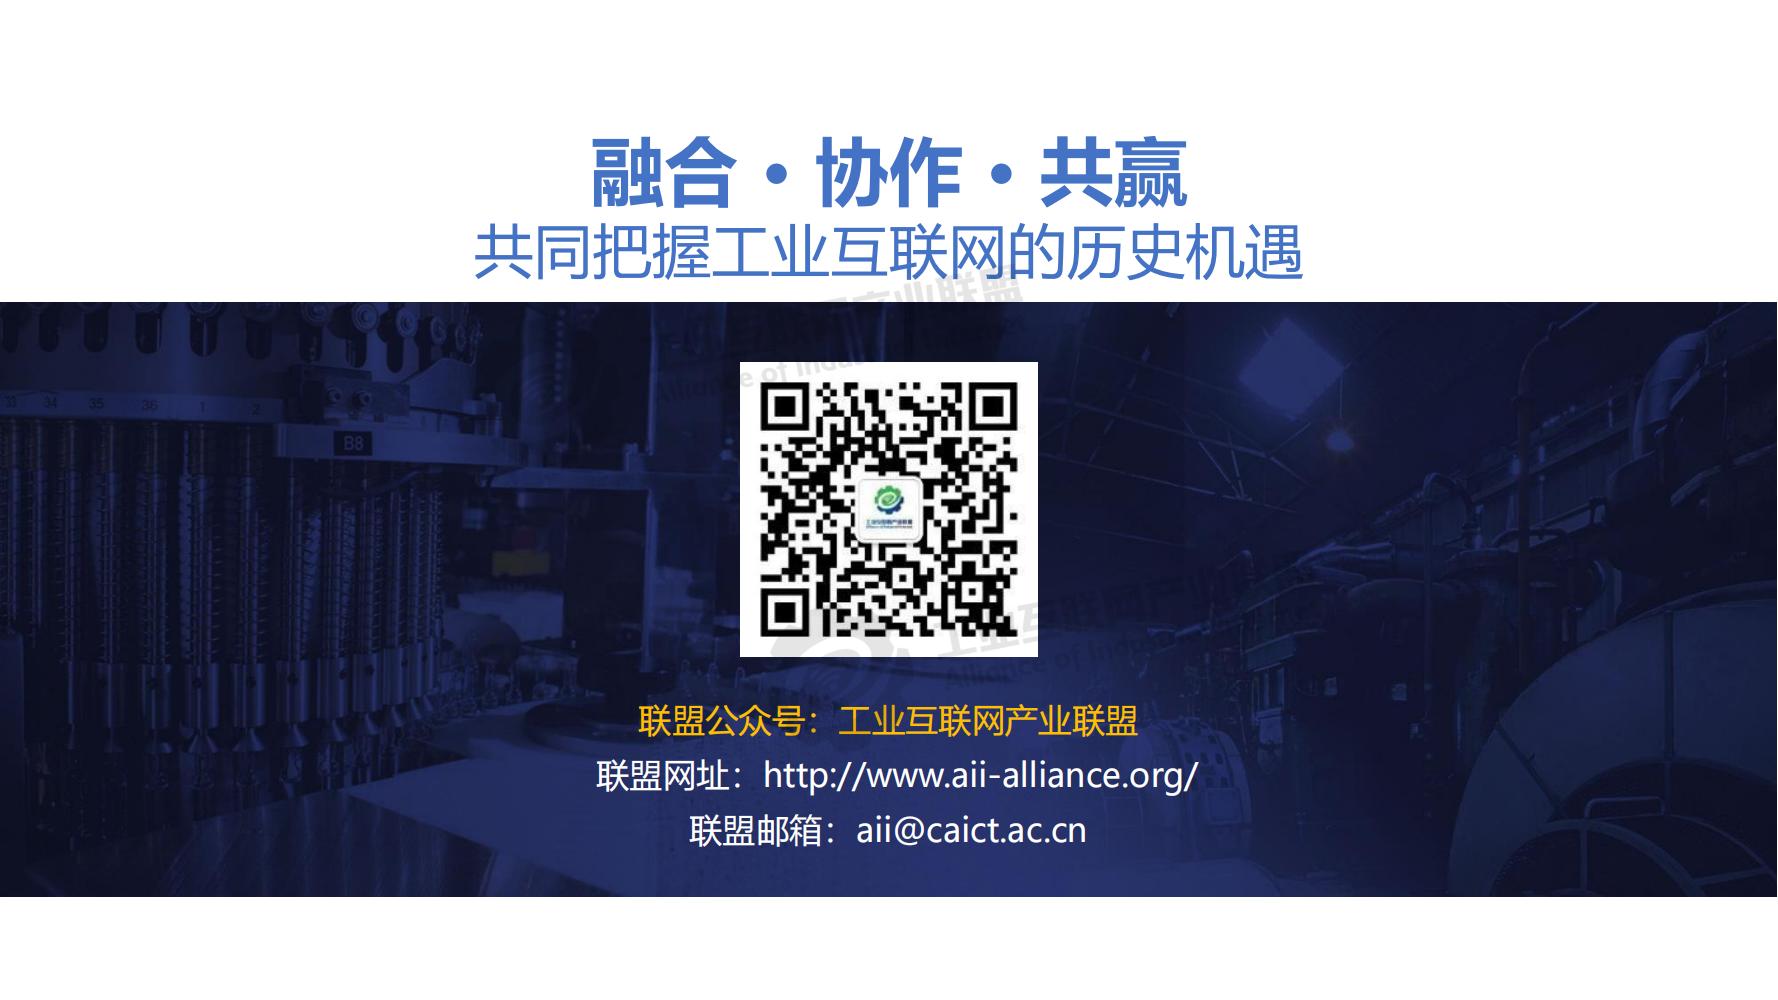 1-中国工业互联网发展成效评估报告-水印_31.jpg